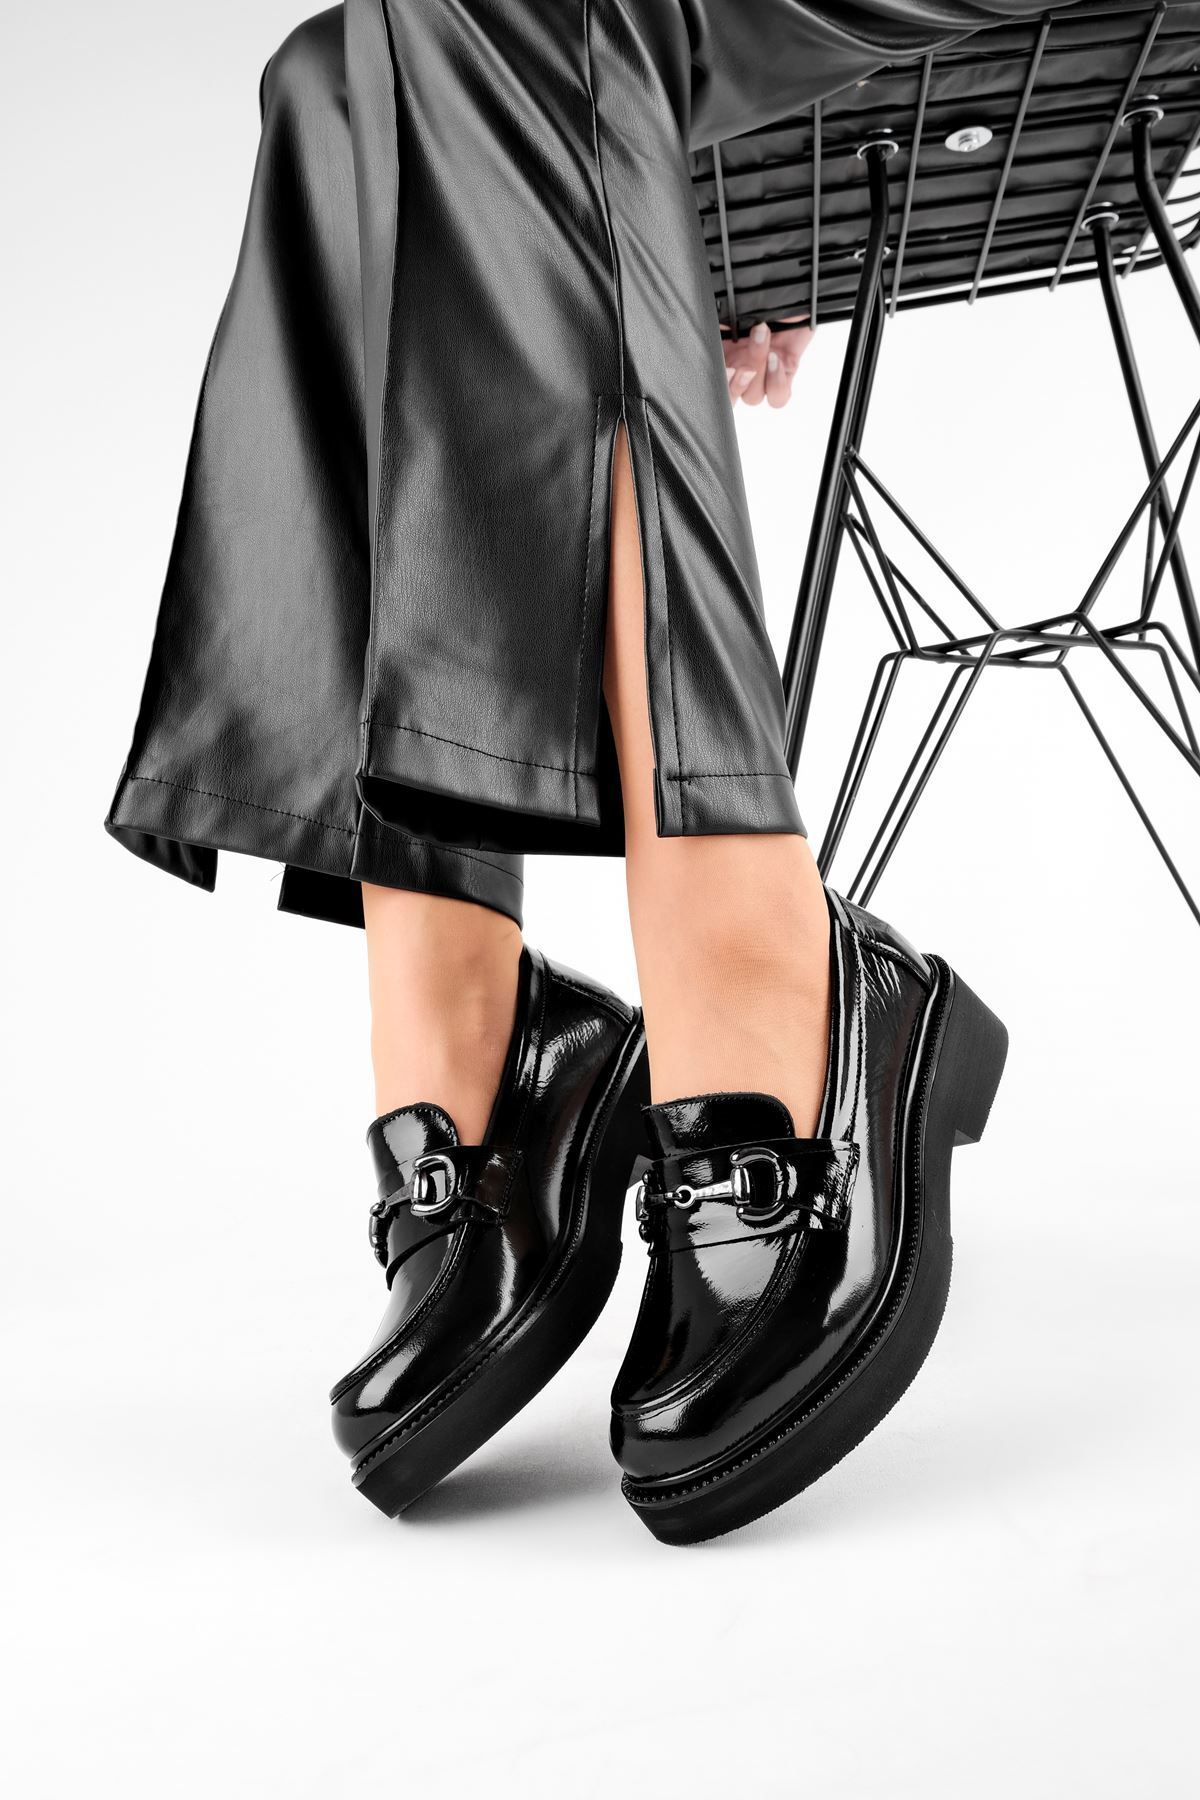 LAL SHOES & BAGS Hungry Toka Detaylı Hakiki Deri Kadın Günlük Ayakkabı-Rugan Siyah